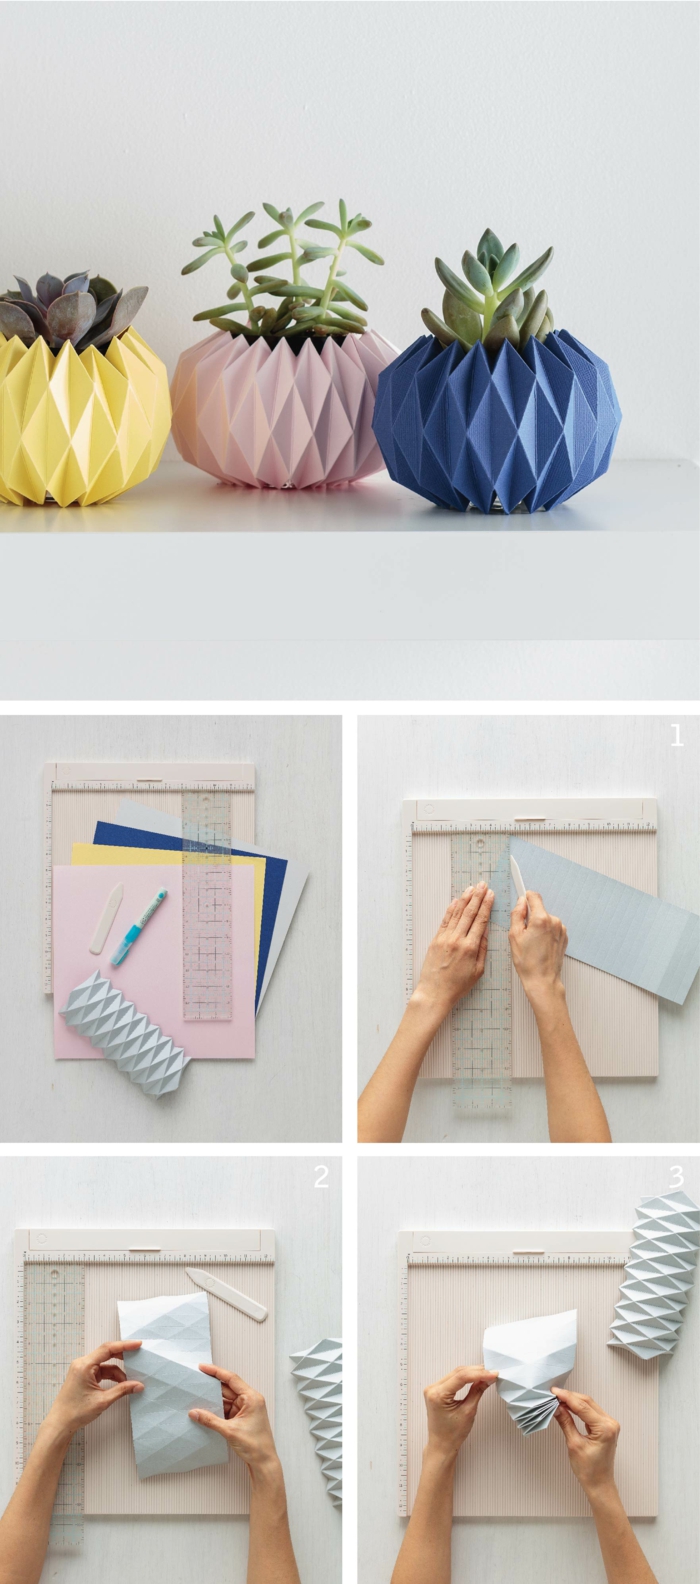 idée originale pour une déco maison en origami, des cache-pots géométriques colorés en papier 